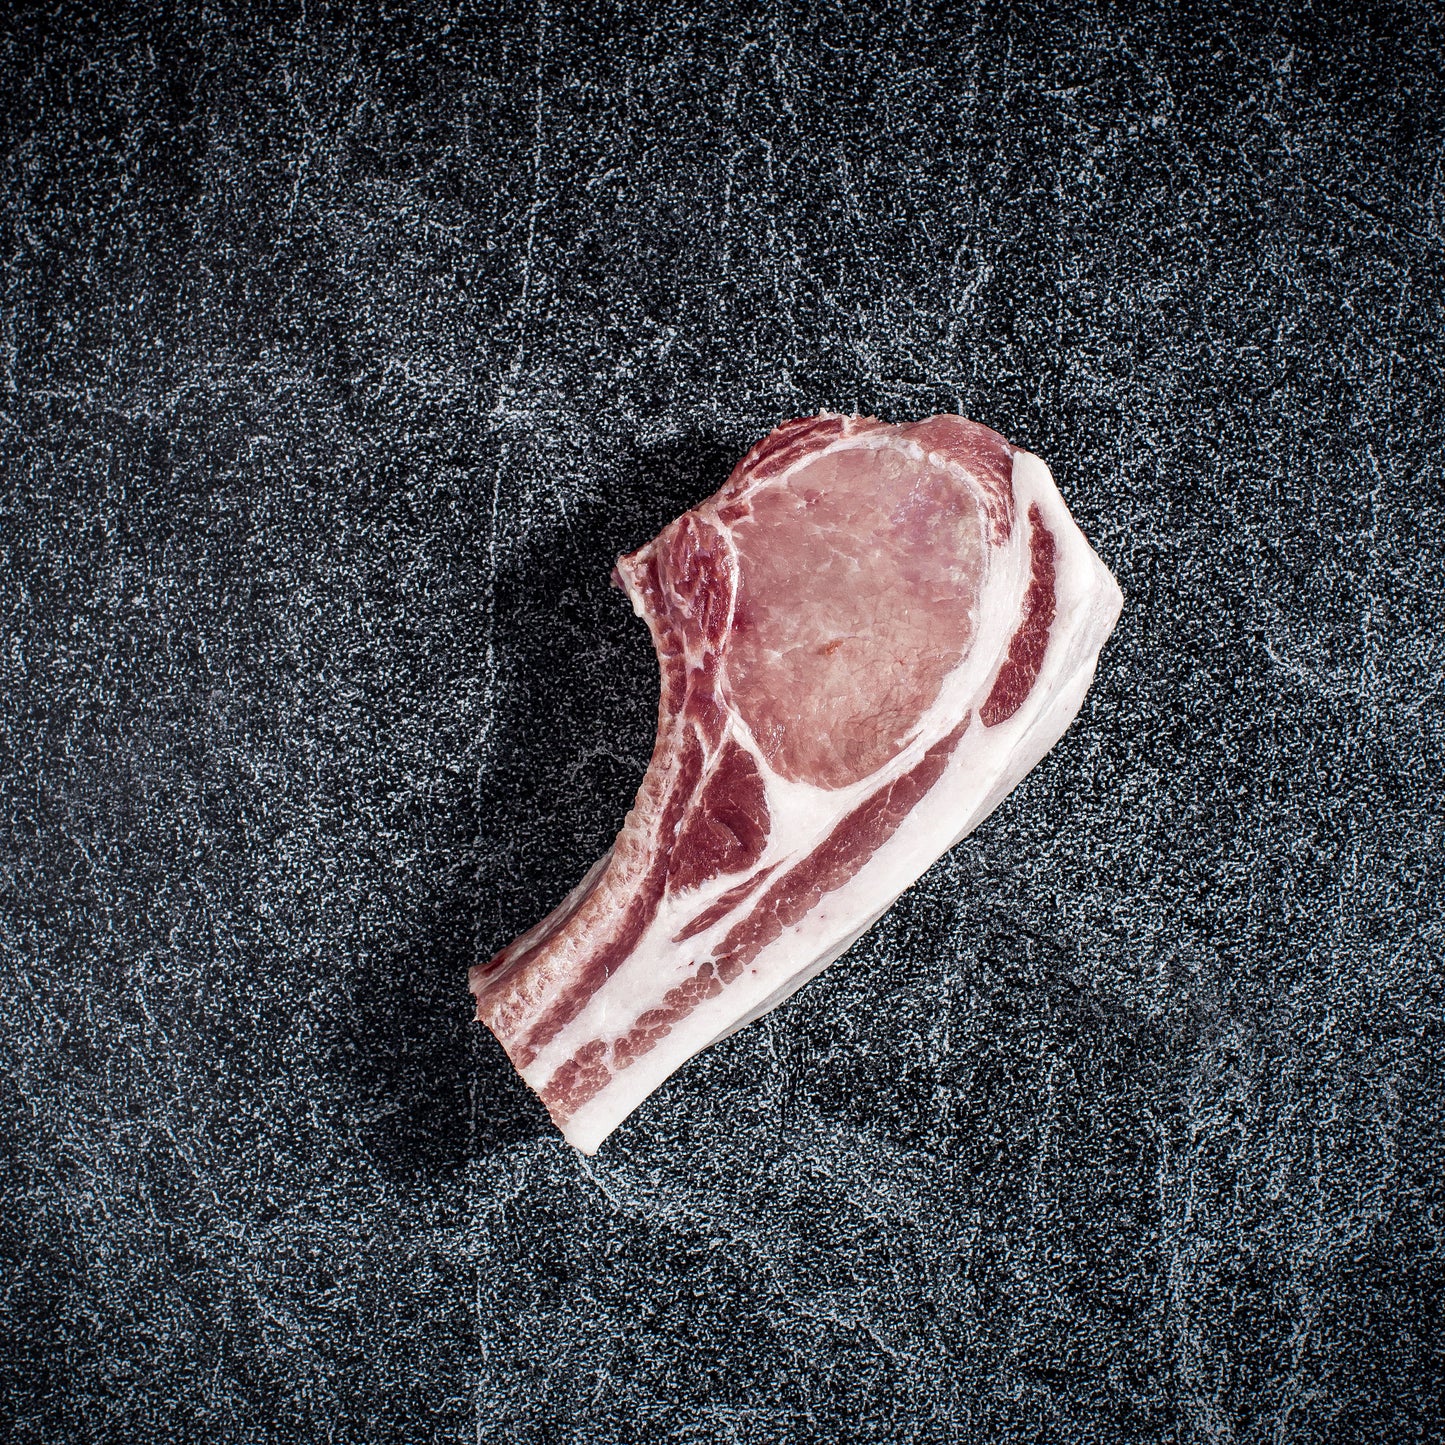 Premium Bone In Pork Chops